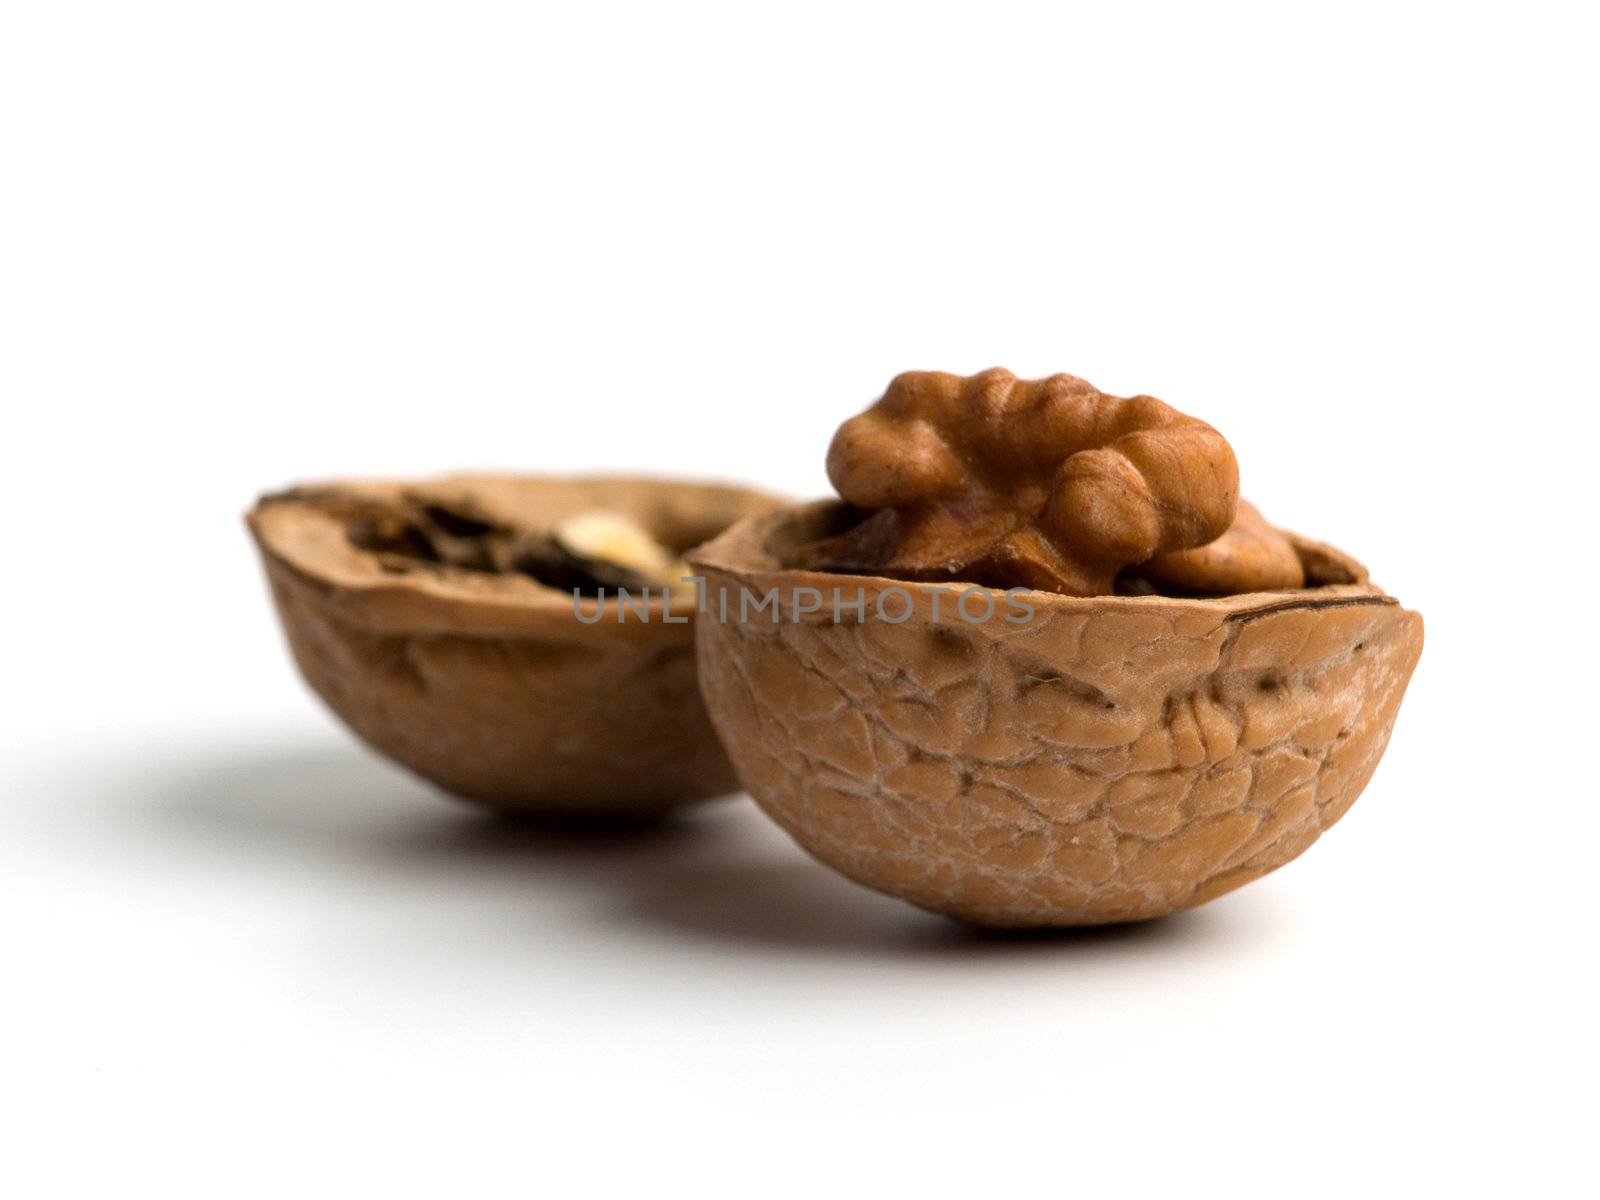 Single opened walnut close up on white background.